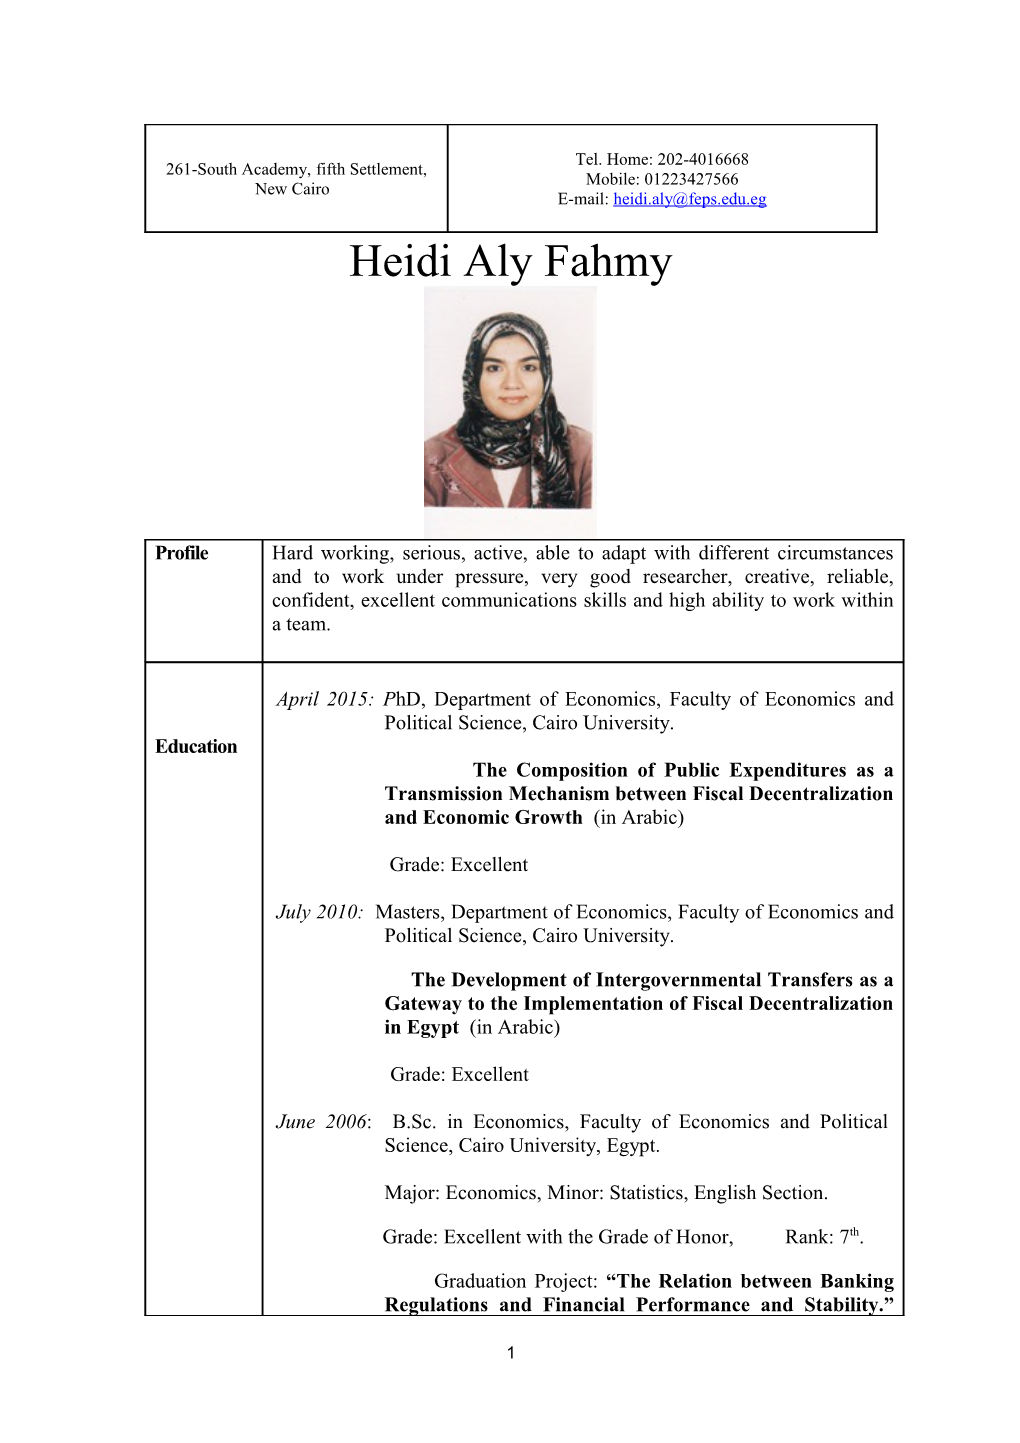 Heidi Aly Fahmy